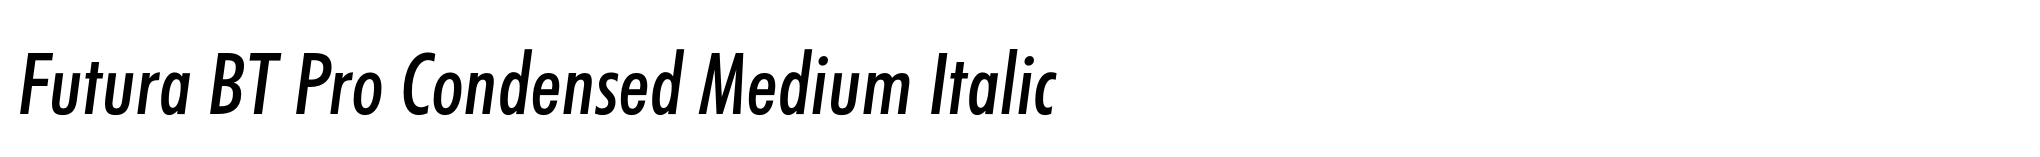 Futura BT Pro Condensed Medium Italic image